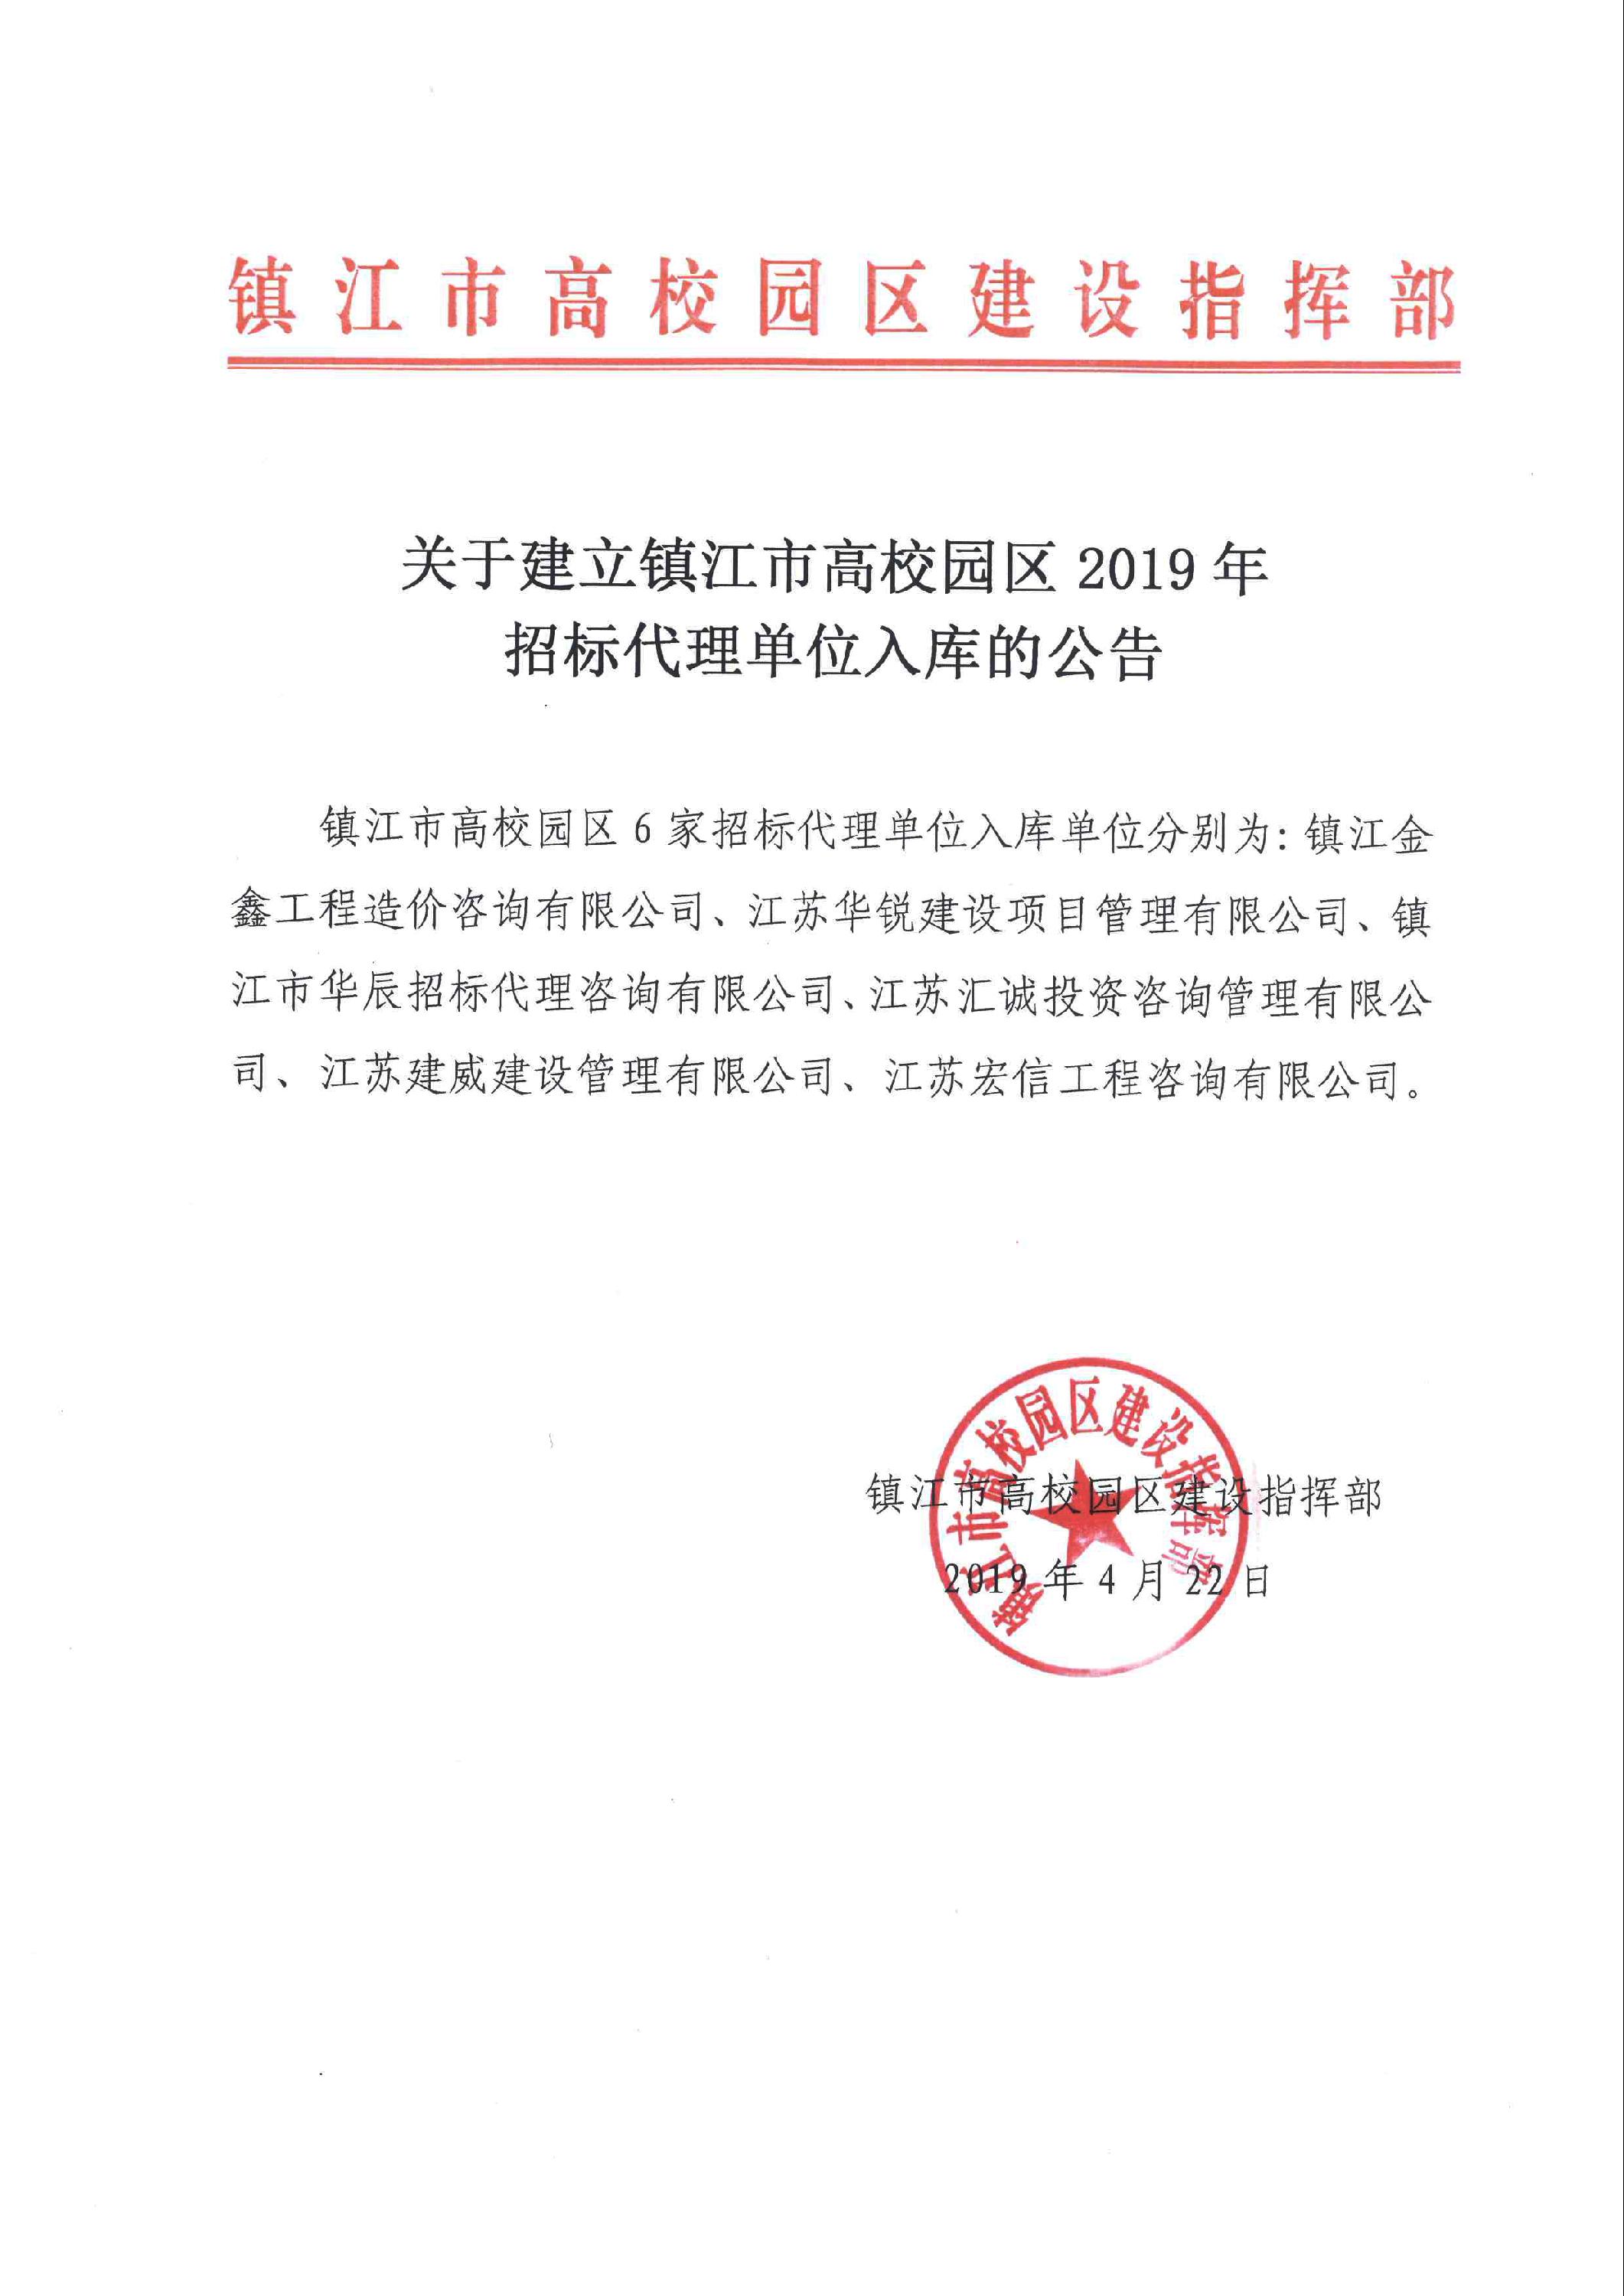 关于建立镇江市高校园区2019年招标代理单位入库的公告.jpg